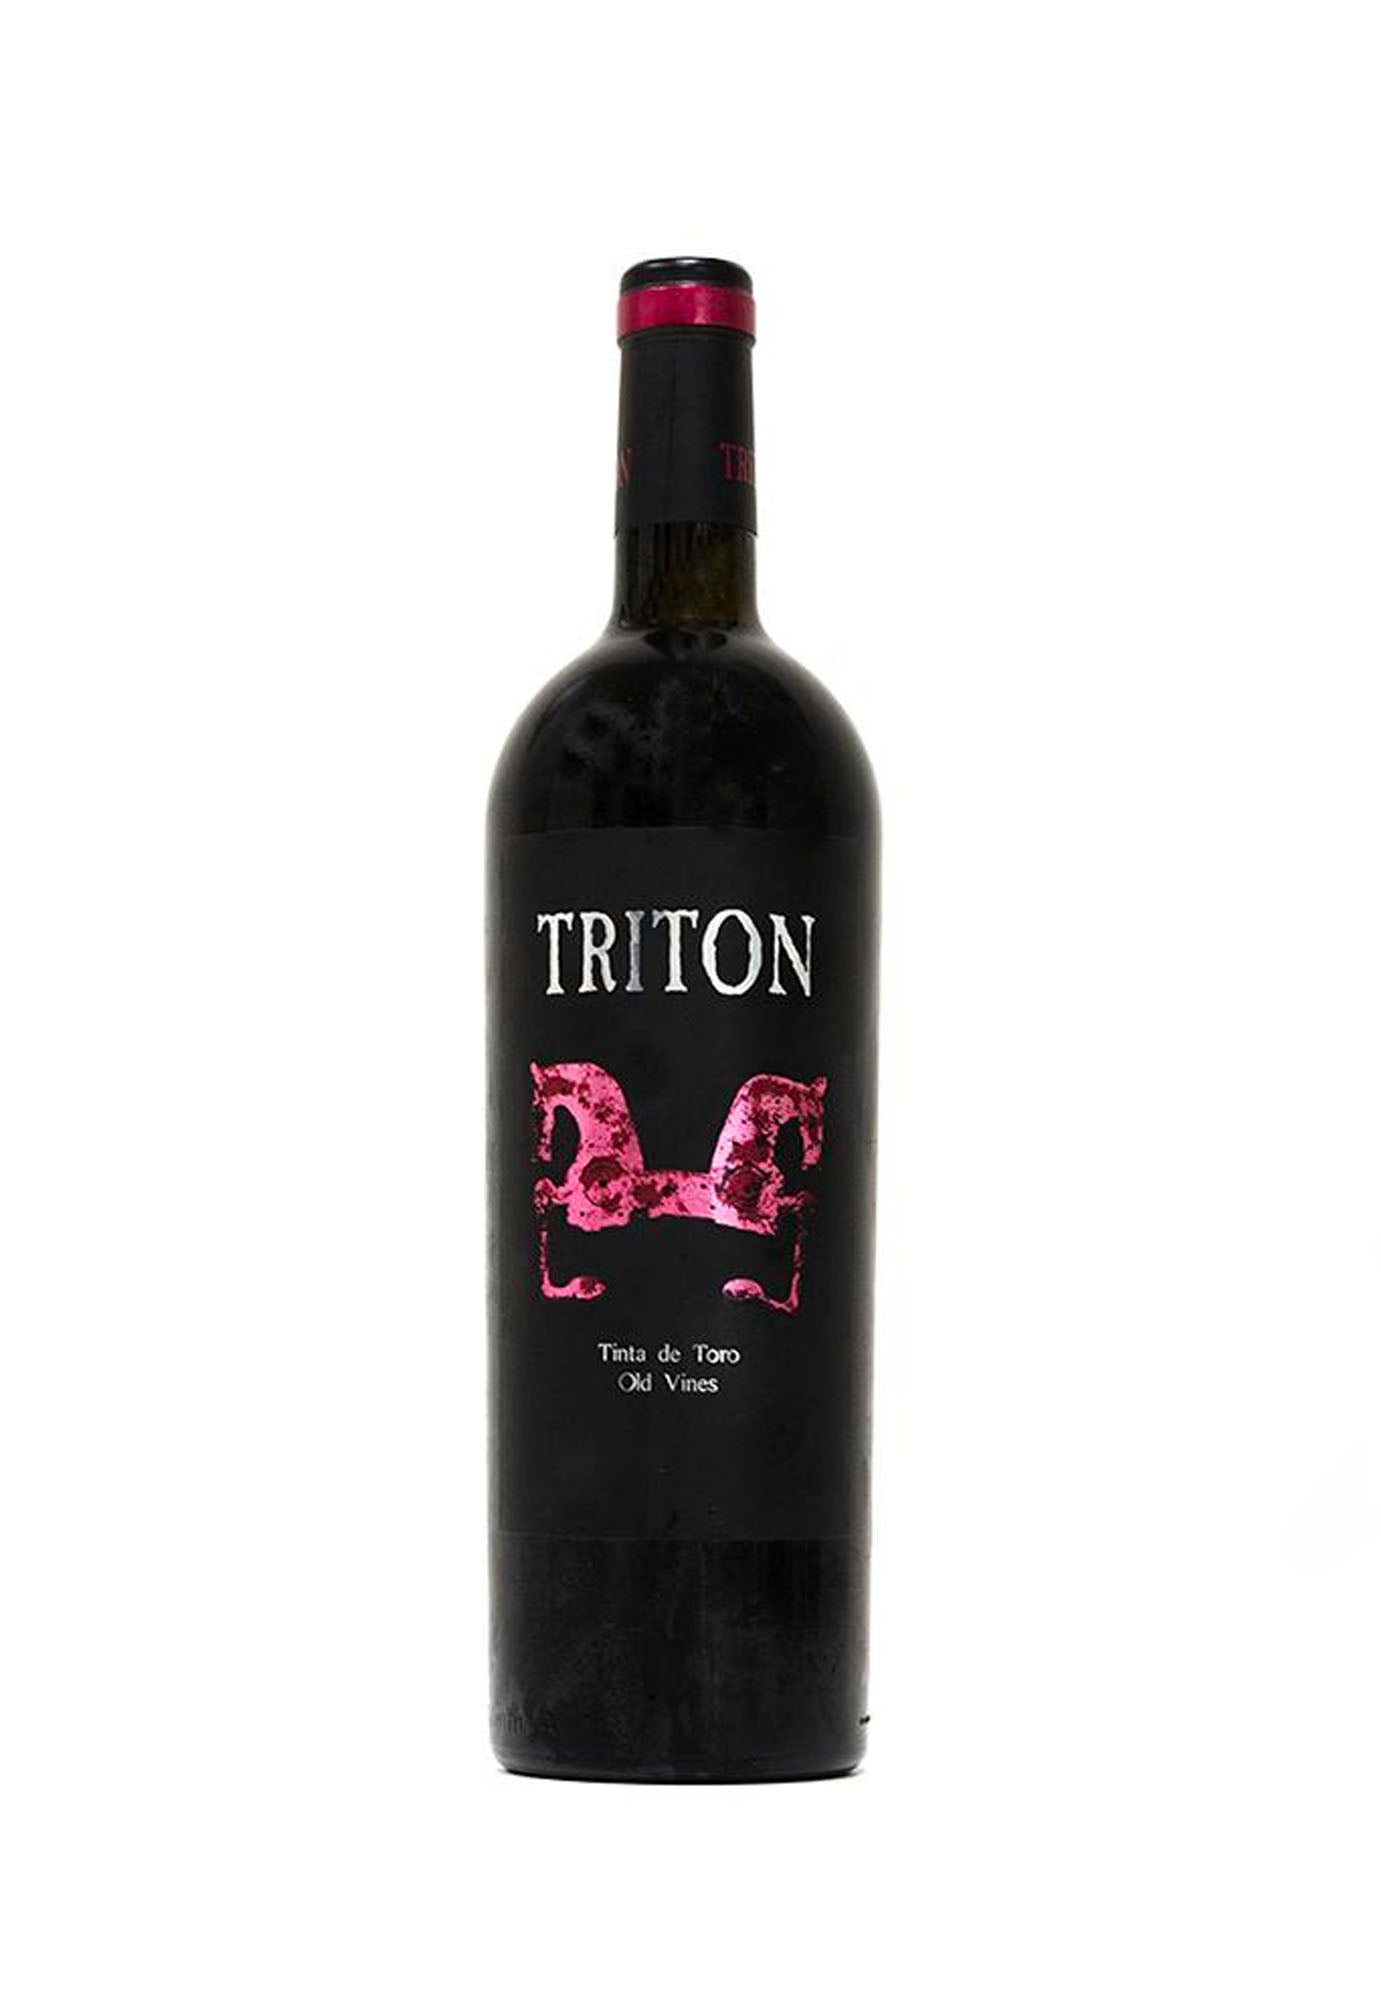 Triton Tinta de Toro Old Vines 2016